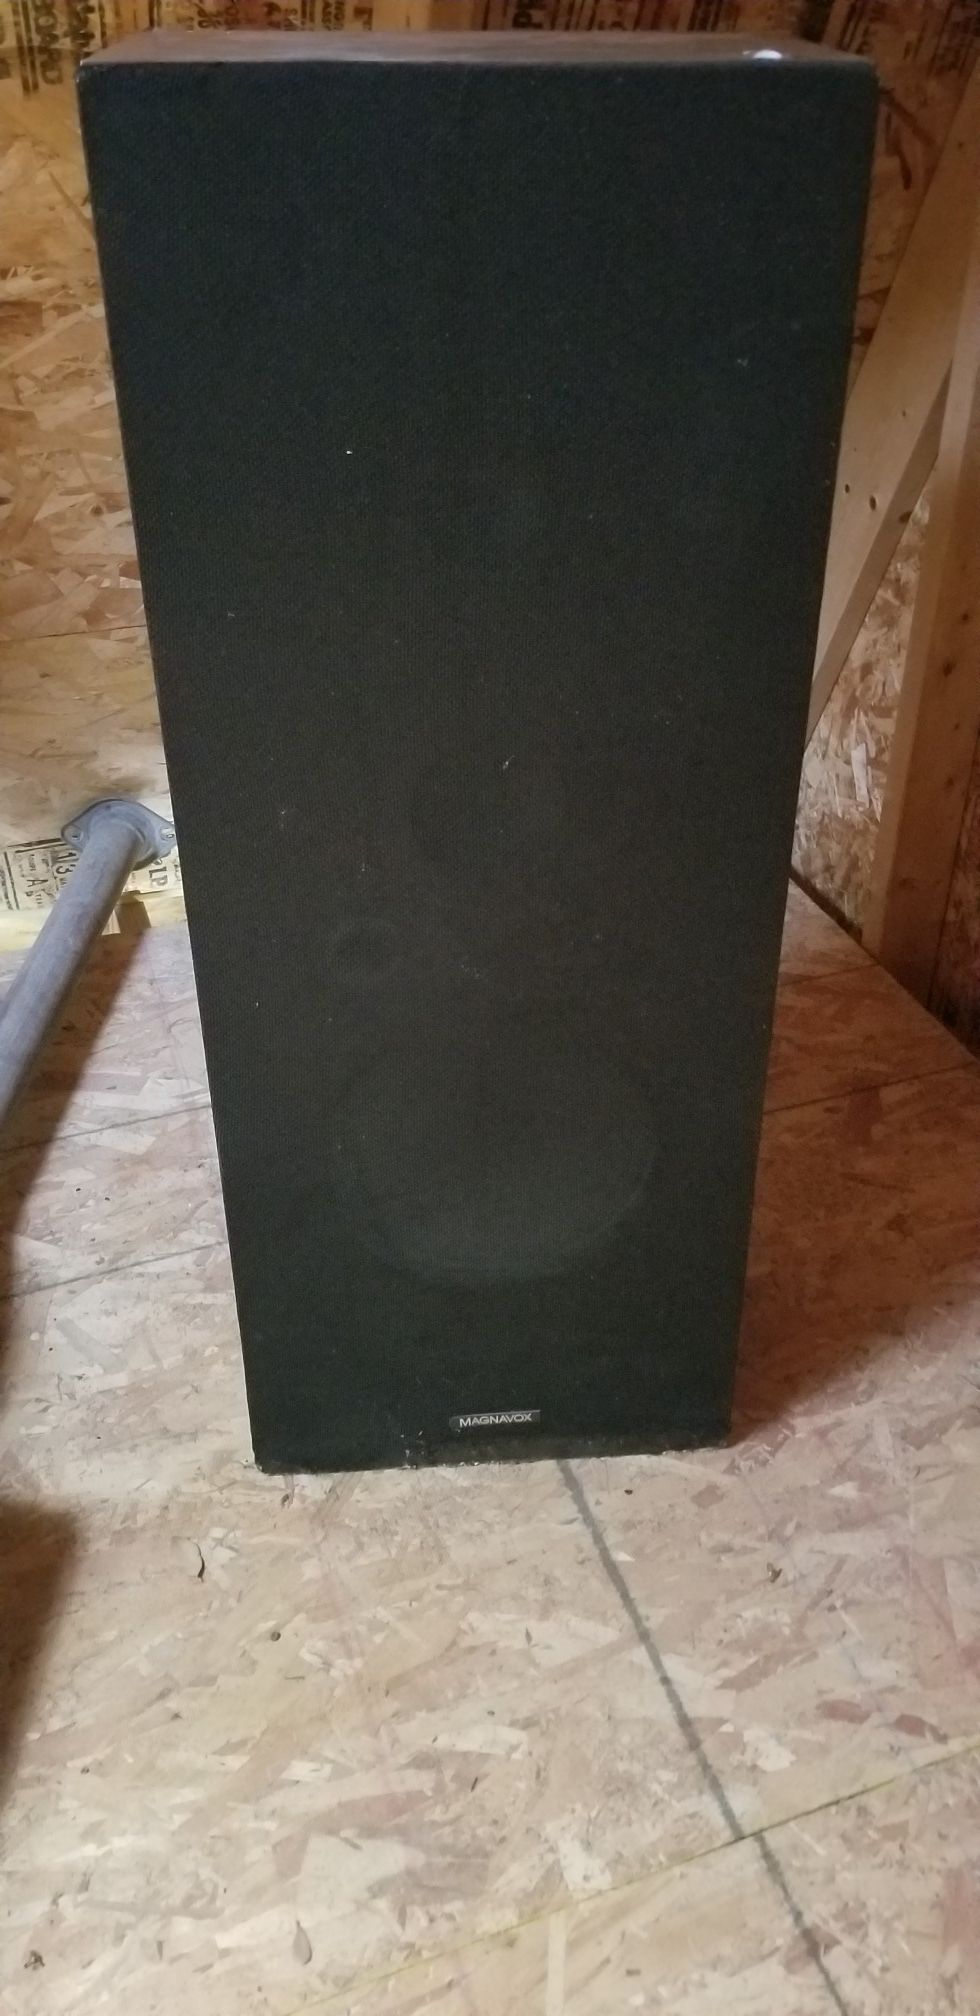 Magnavox speakers